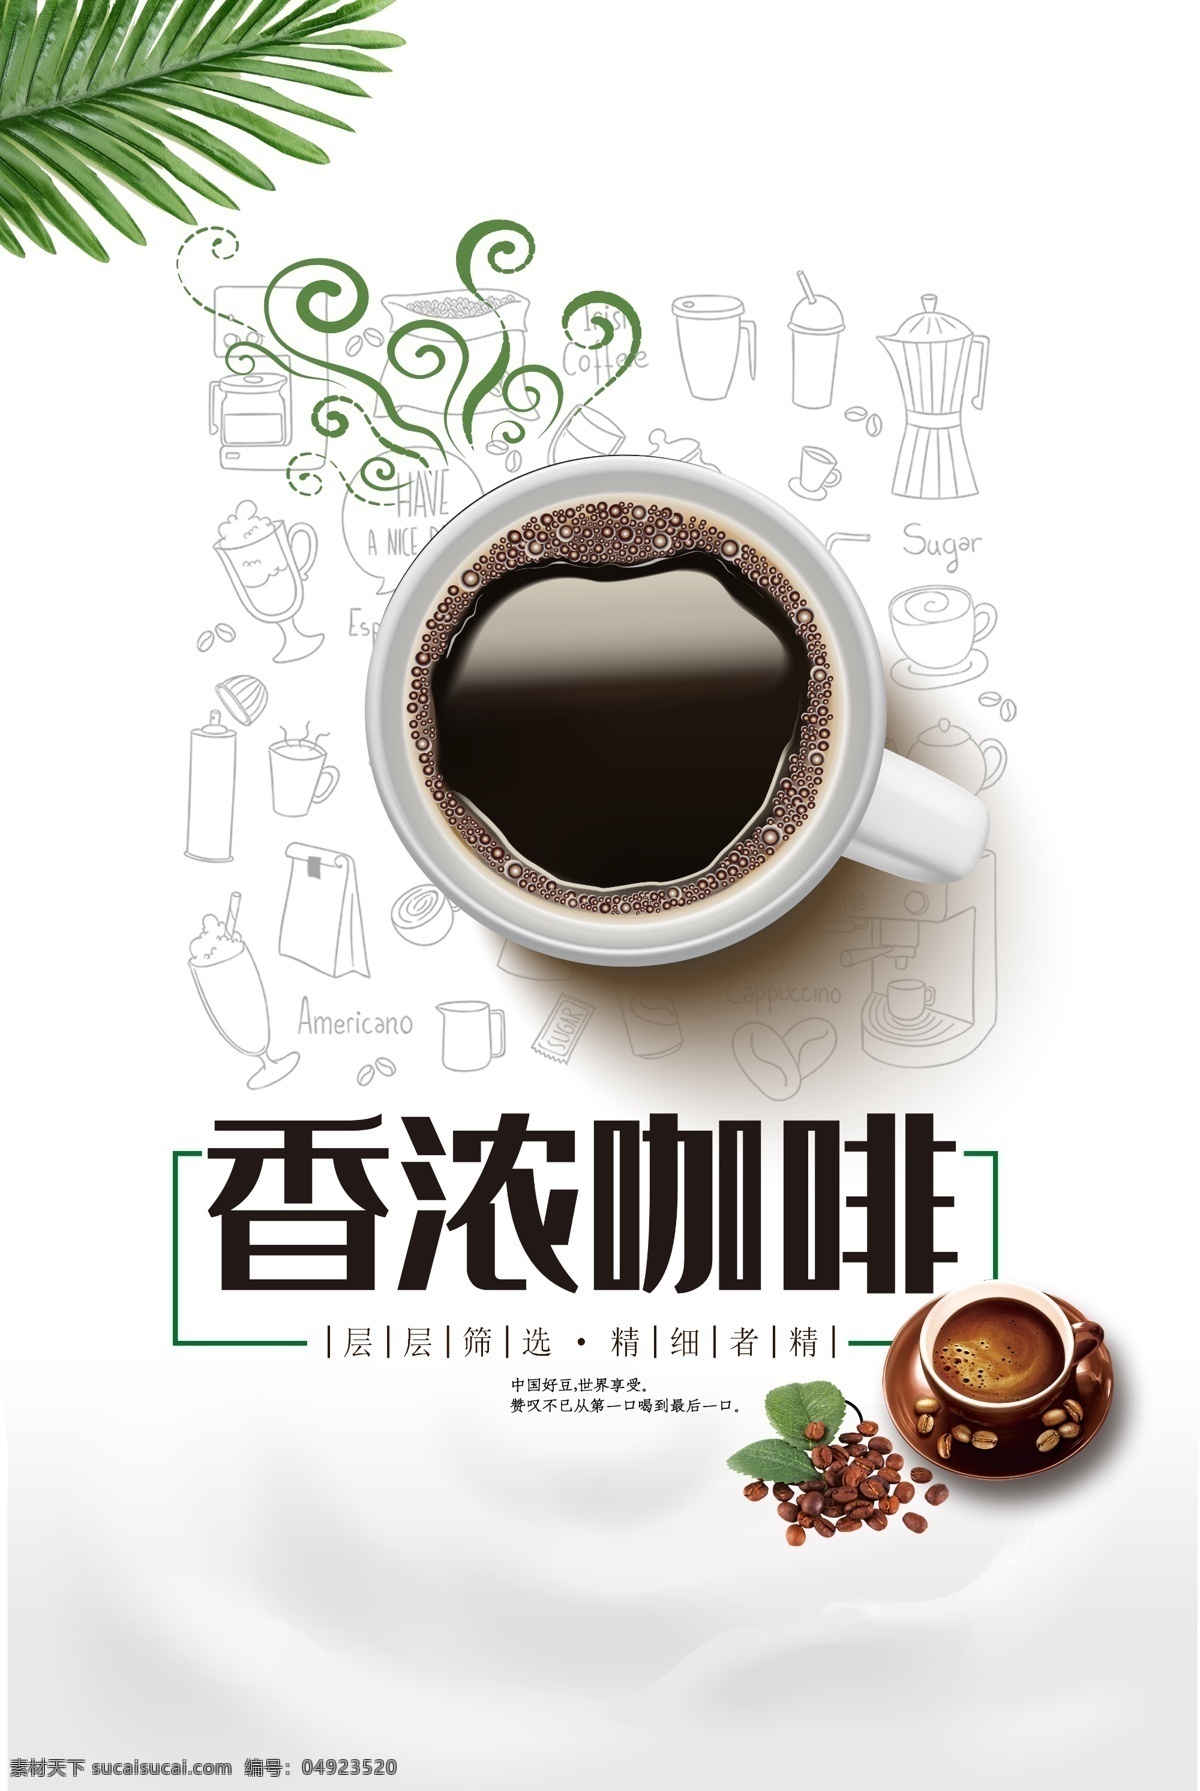 香 浓 咖啡 宣传海报 香浓咖啡 品味咖啡 层层筛选 精细者精 好口感 传承公益 花式咖啡 绿叶 叶子 咖啡海报 psd素材 源文件